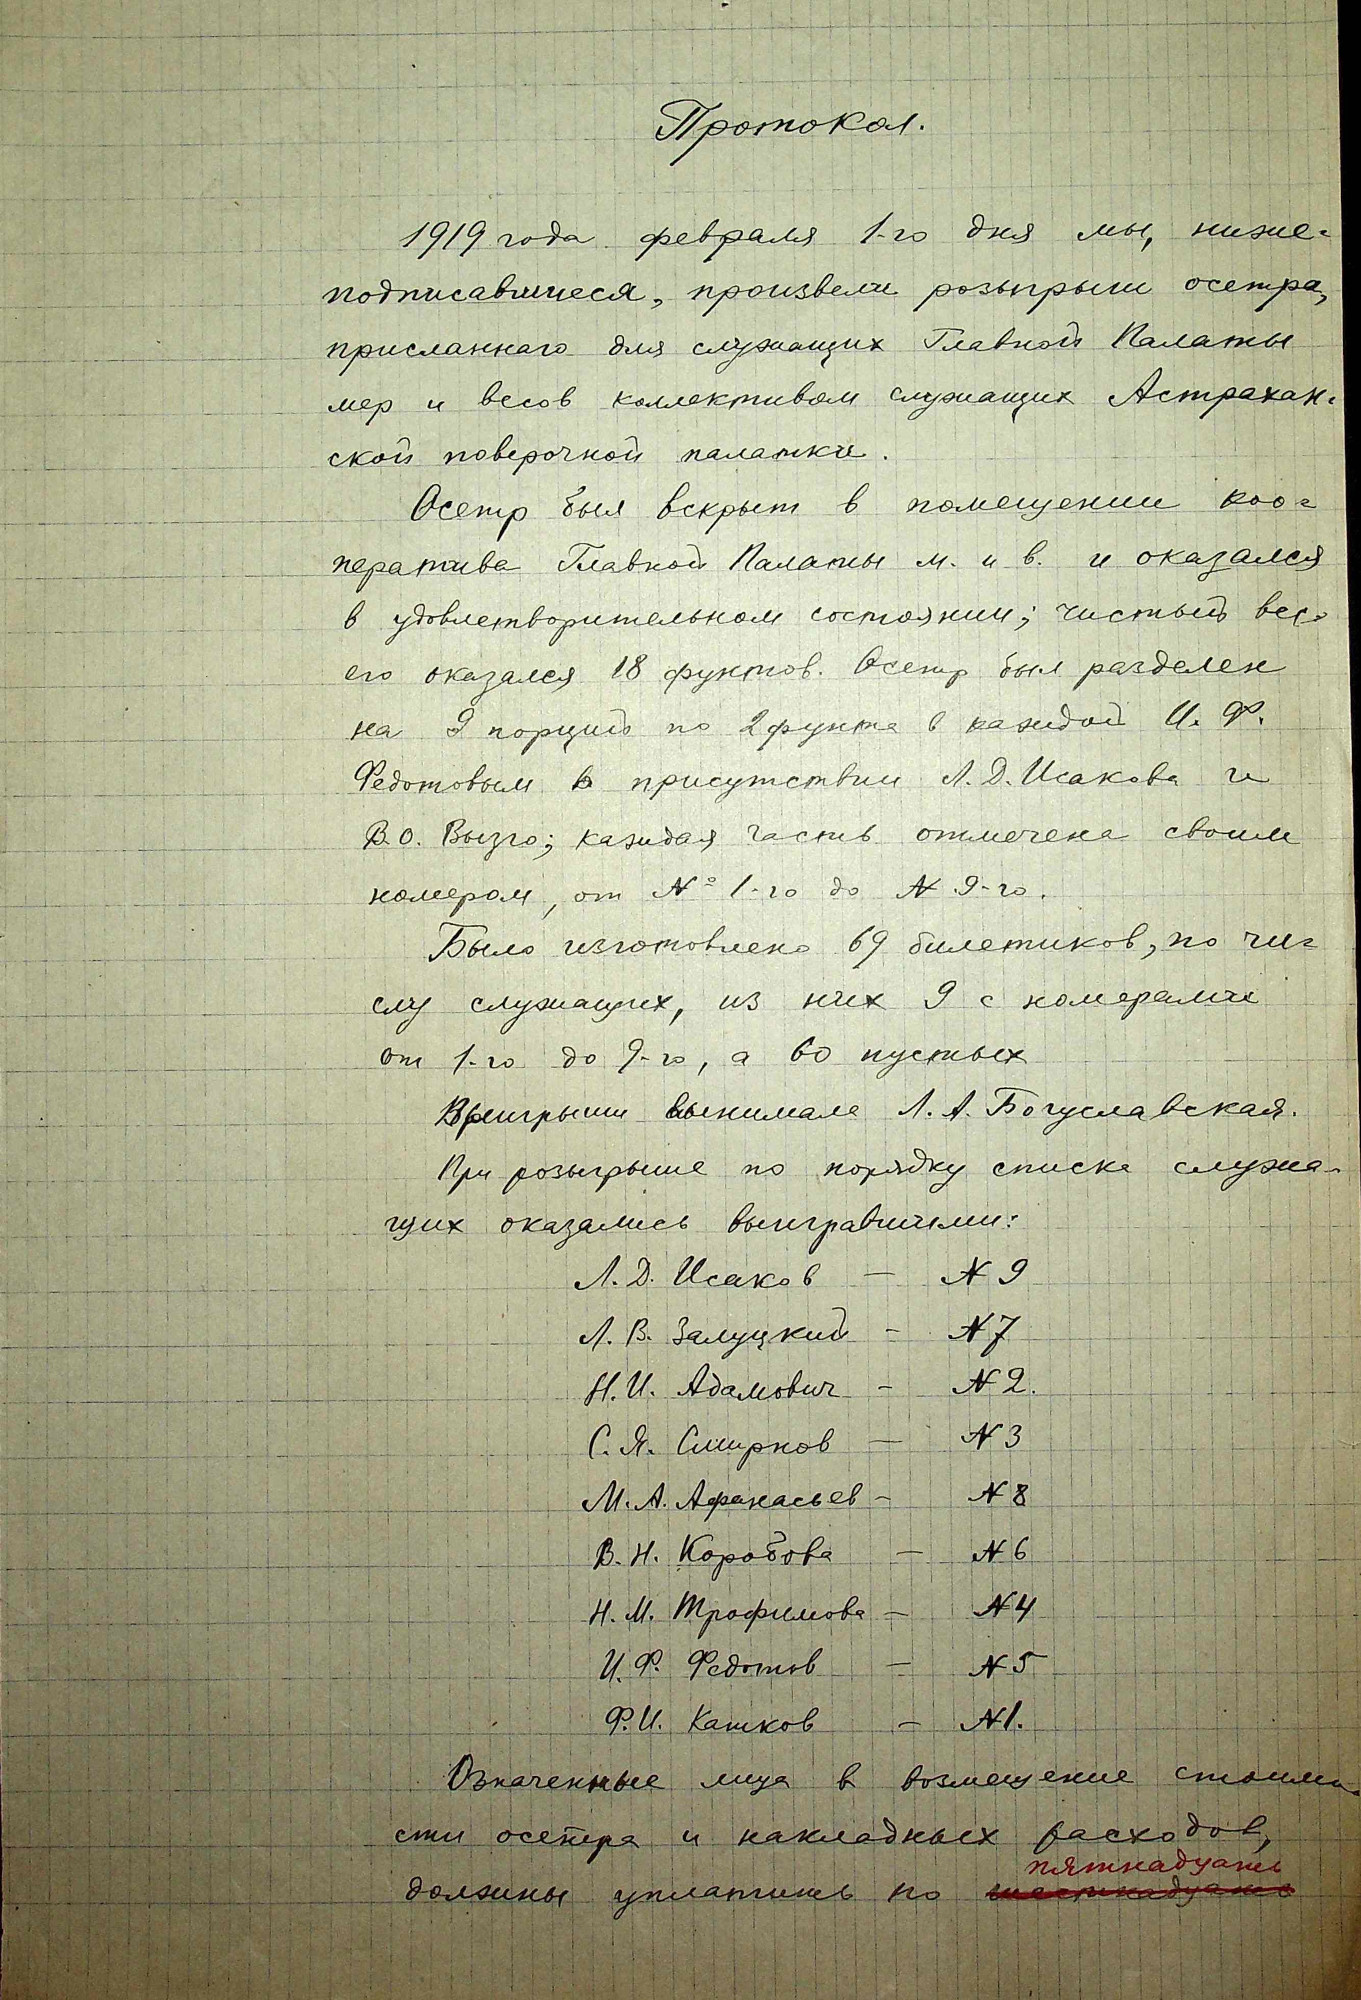 Протокол собрания служащих Главной палаты и Петроградской поверочной палатки от 1 февраля 1919 г.